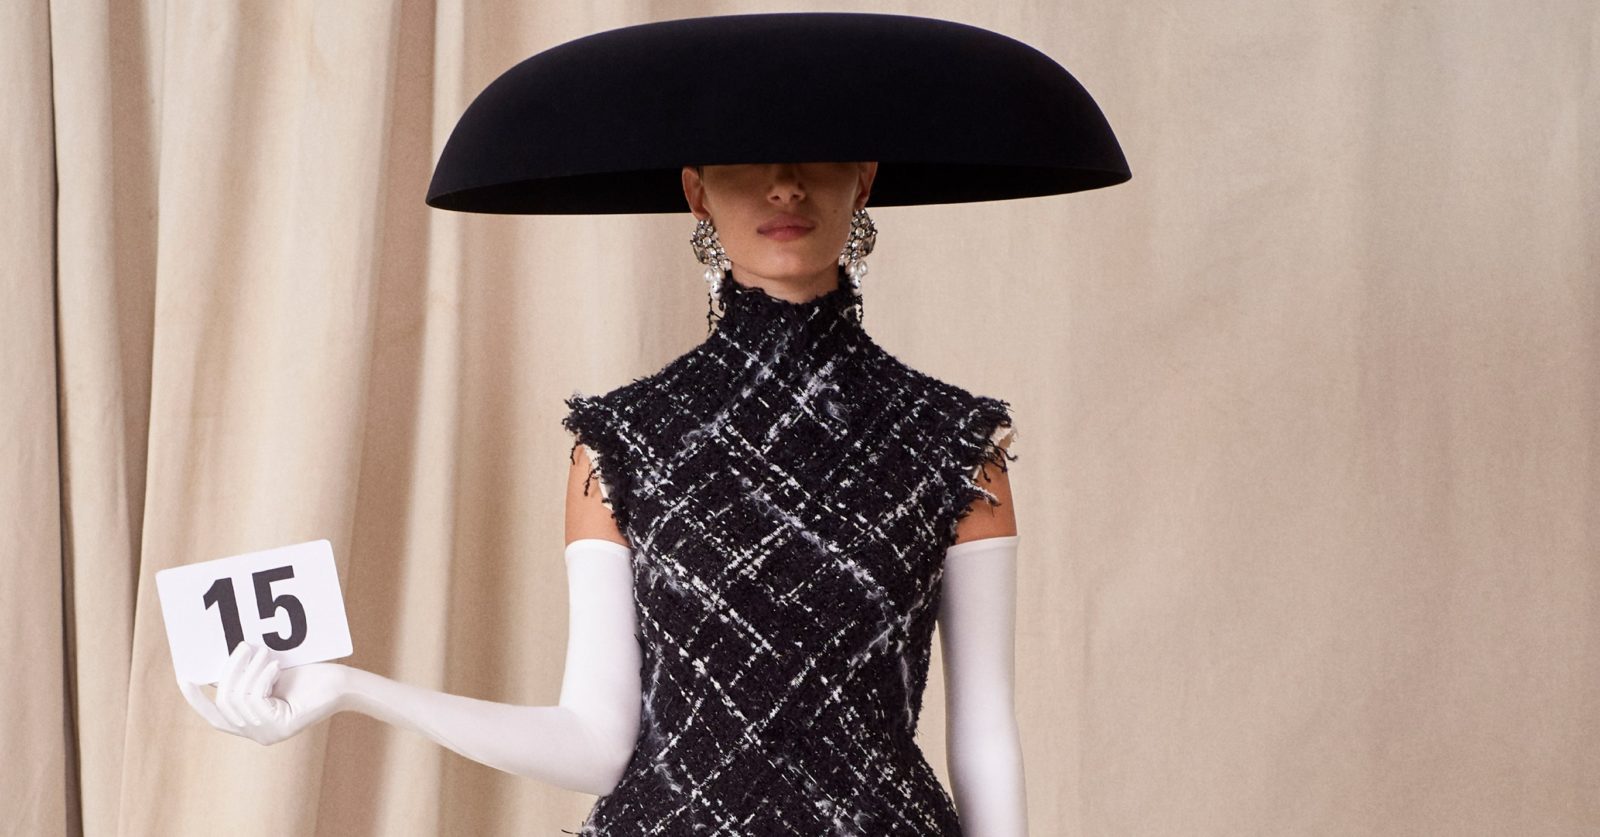 Balenciaga makes striking comeback in haute couture show